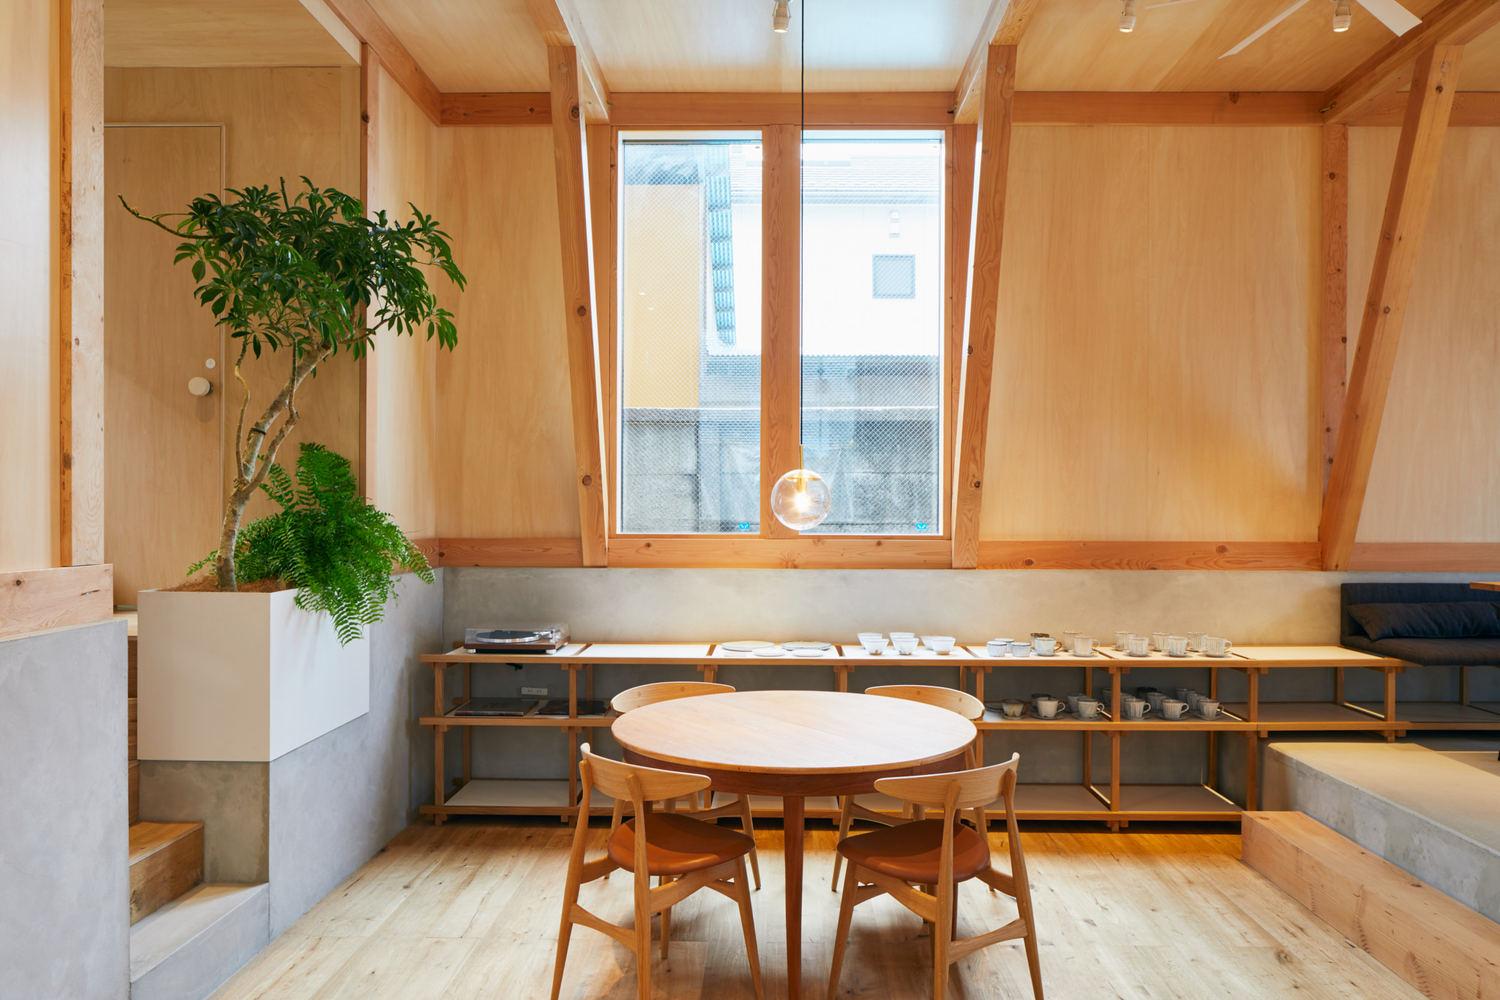 【東京咖啡館住宅二合一】花盡心思承繼祖業 將傳統日本工藝帶到未來